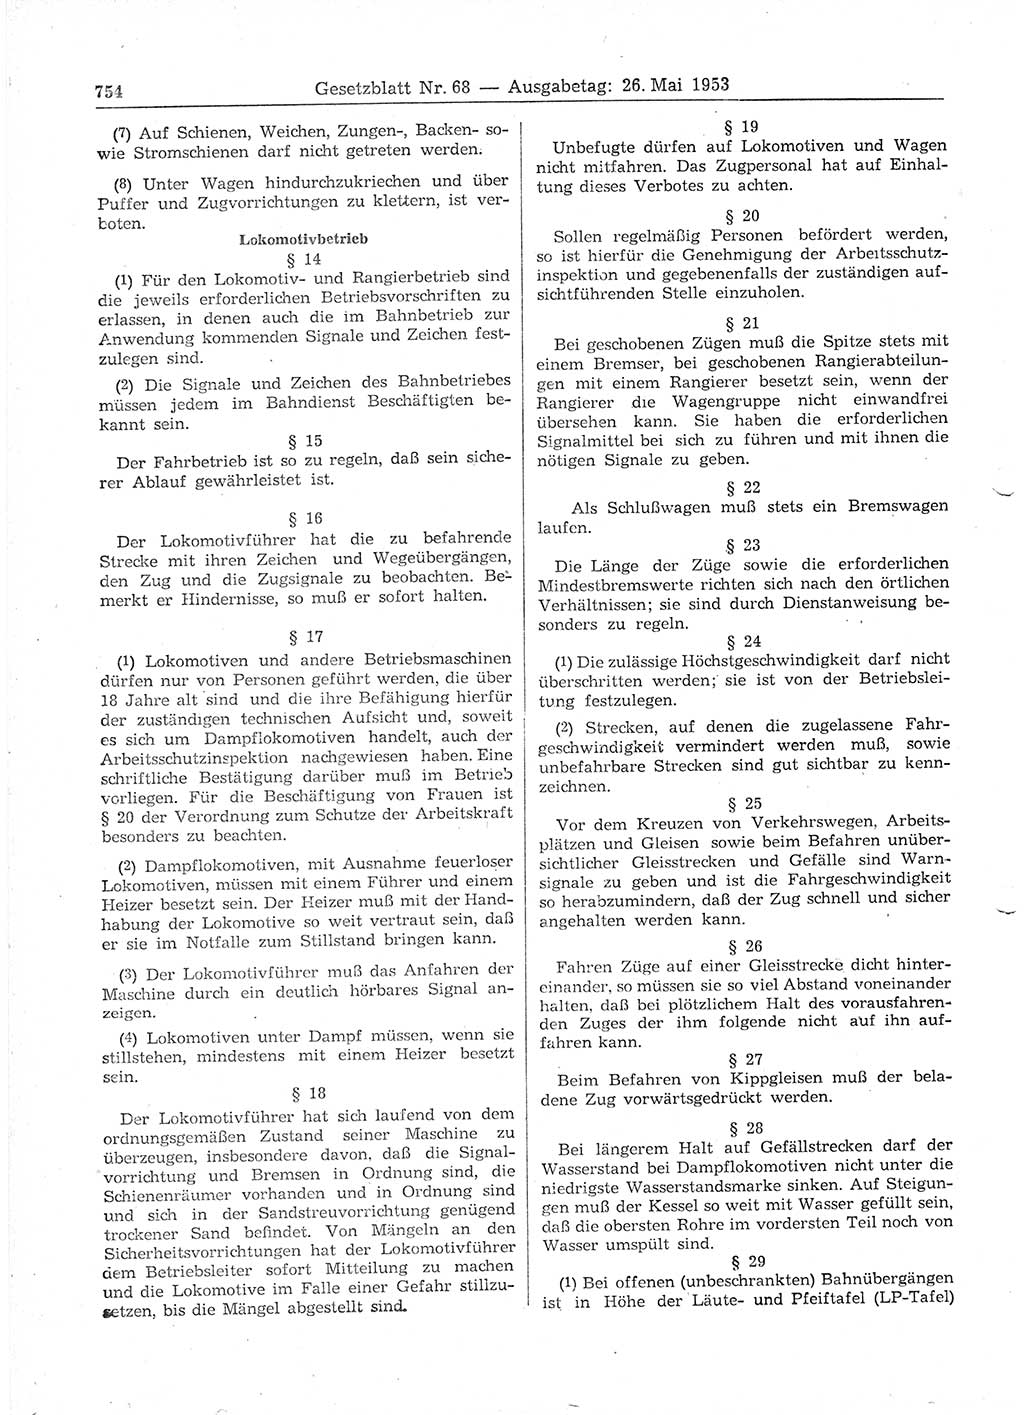 Gesetzblatt (GBl.) der Deutschen Demokratischen Republik (DDR) 1953, Seite 754 (GBl. DDR 1953, S. 754)